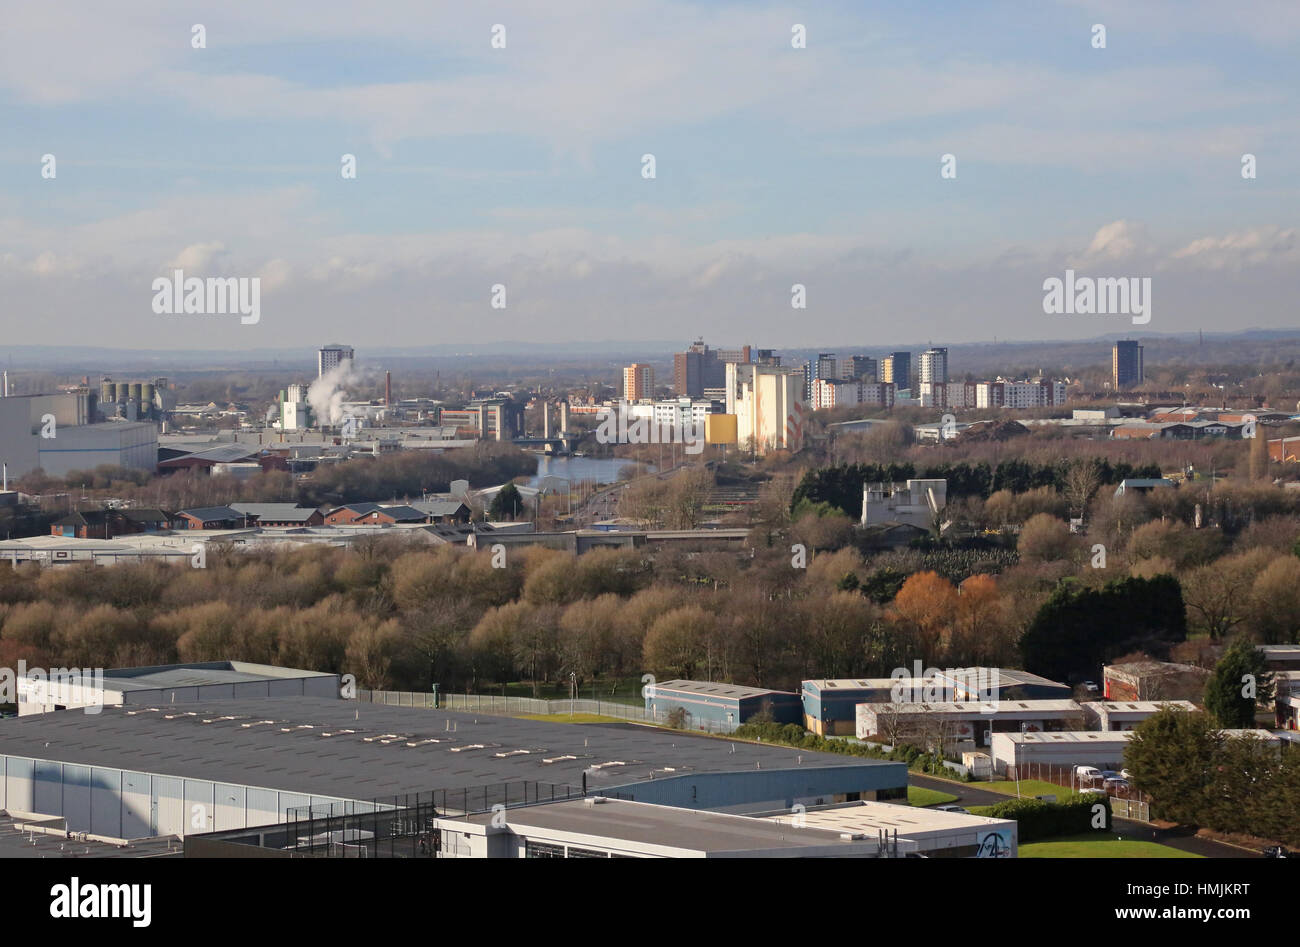 Vue de haut niveau d'Eccles centre ville, près de Manchester, Royaume-Uni. Prises de Salford Quays. Banque D'Images